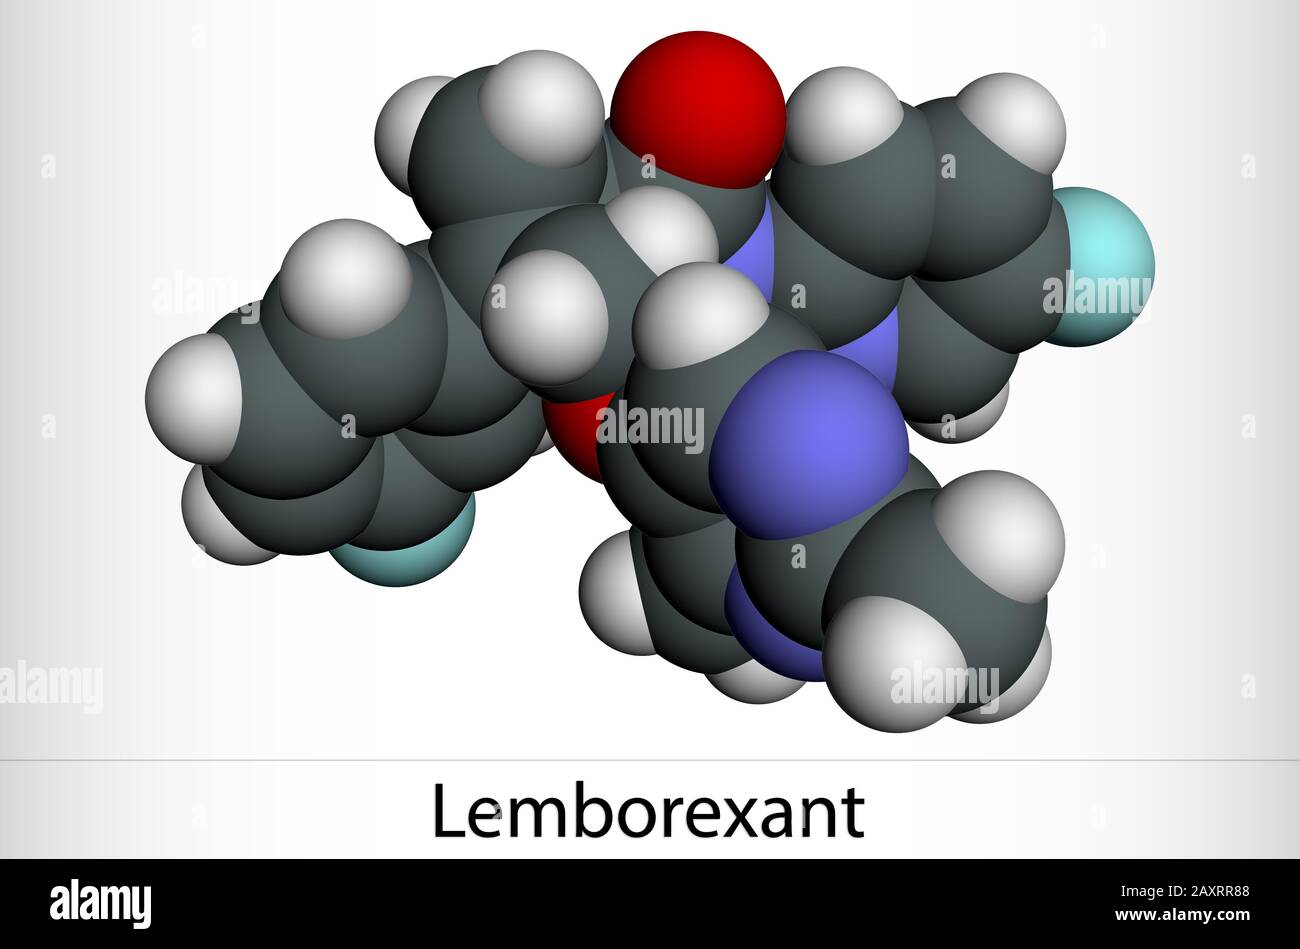 Lemborexant, C22H20F2N4O2-Molekül. Es handelt sich um einen Dual-Orexin-Rezeptor-Antagonisten, der bei der Behandlung von Schlaflosigkeit verwendet wird. Molekularmodell. 3D-Rendering Stockfoto